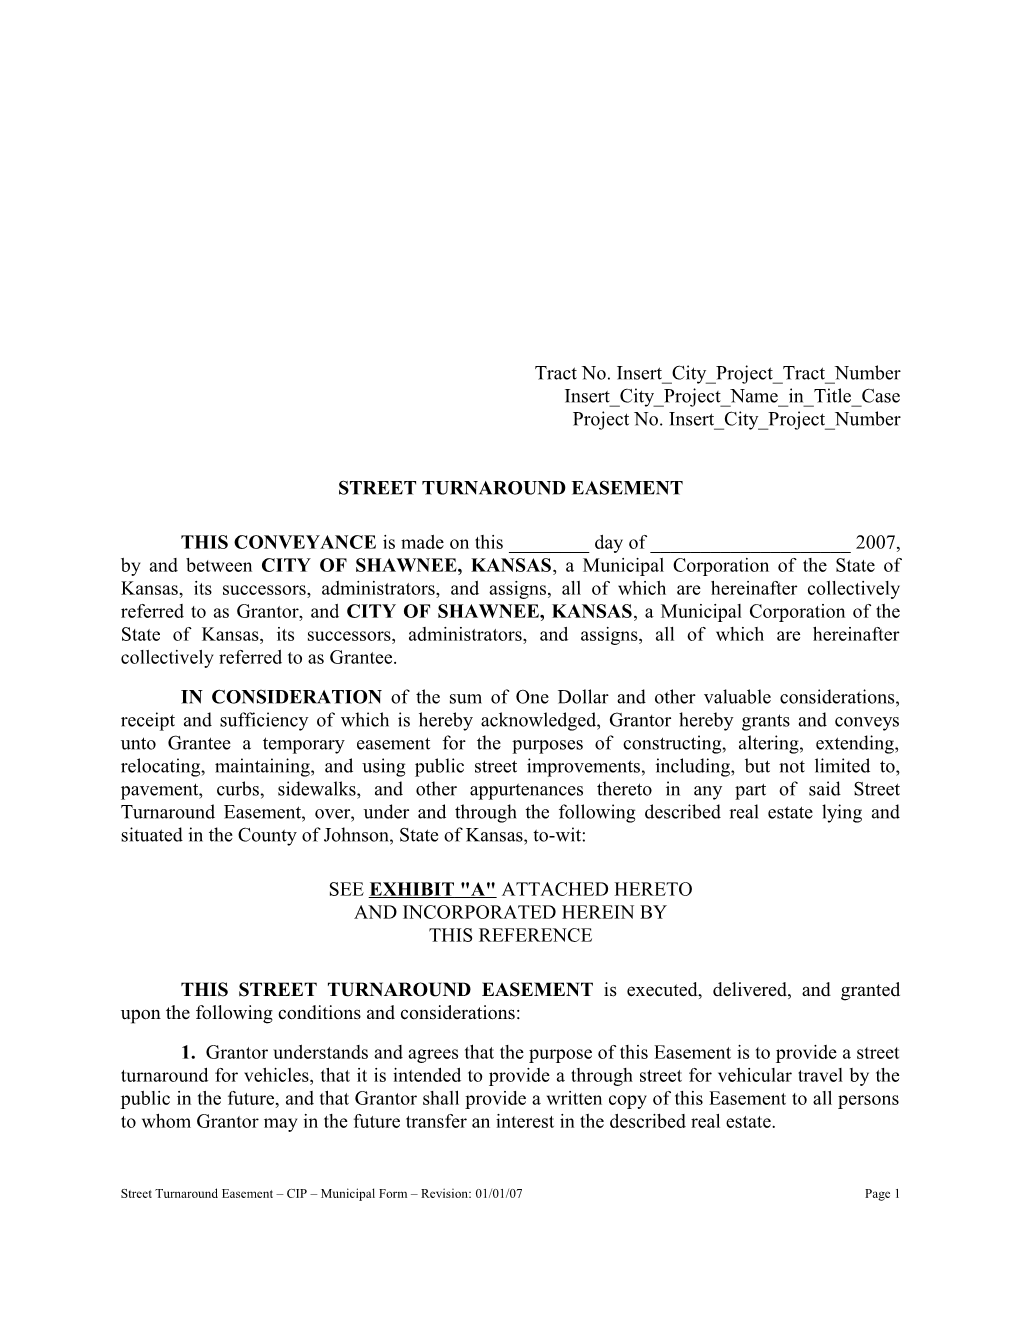 Street Turnaround Easement - CIP - Municipal Form